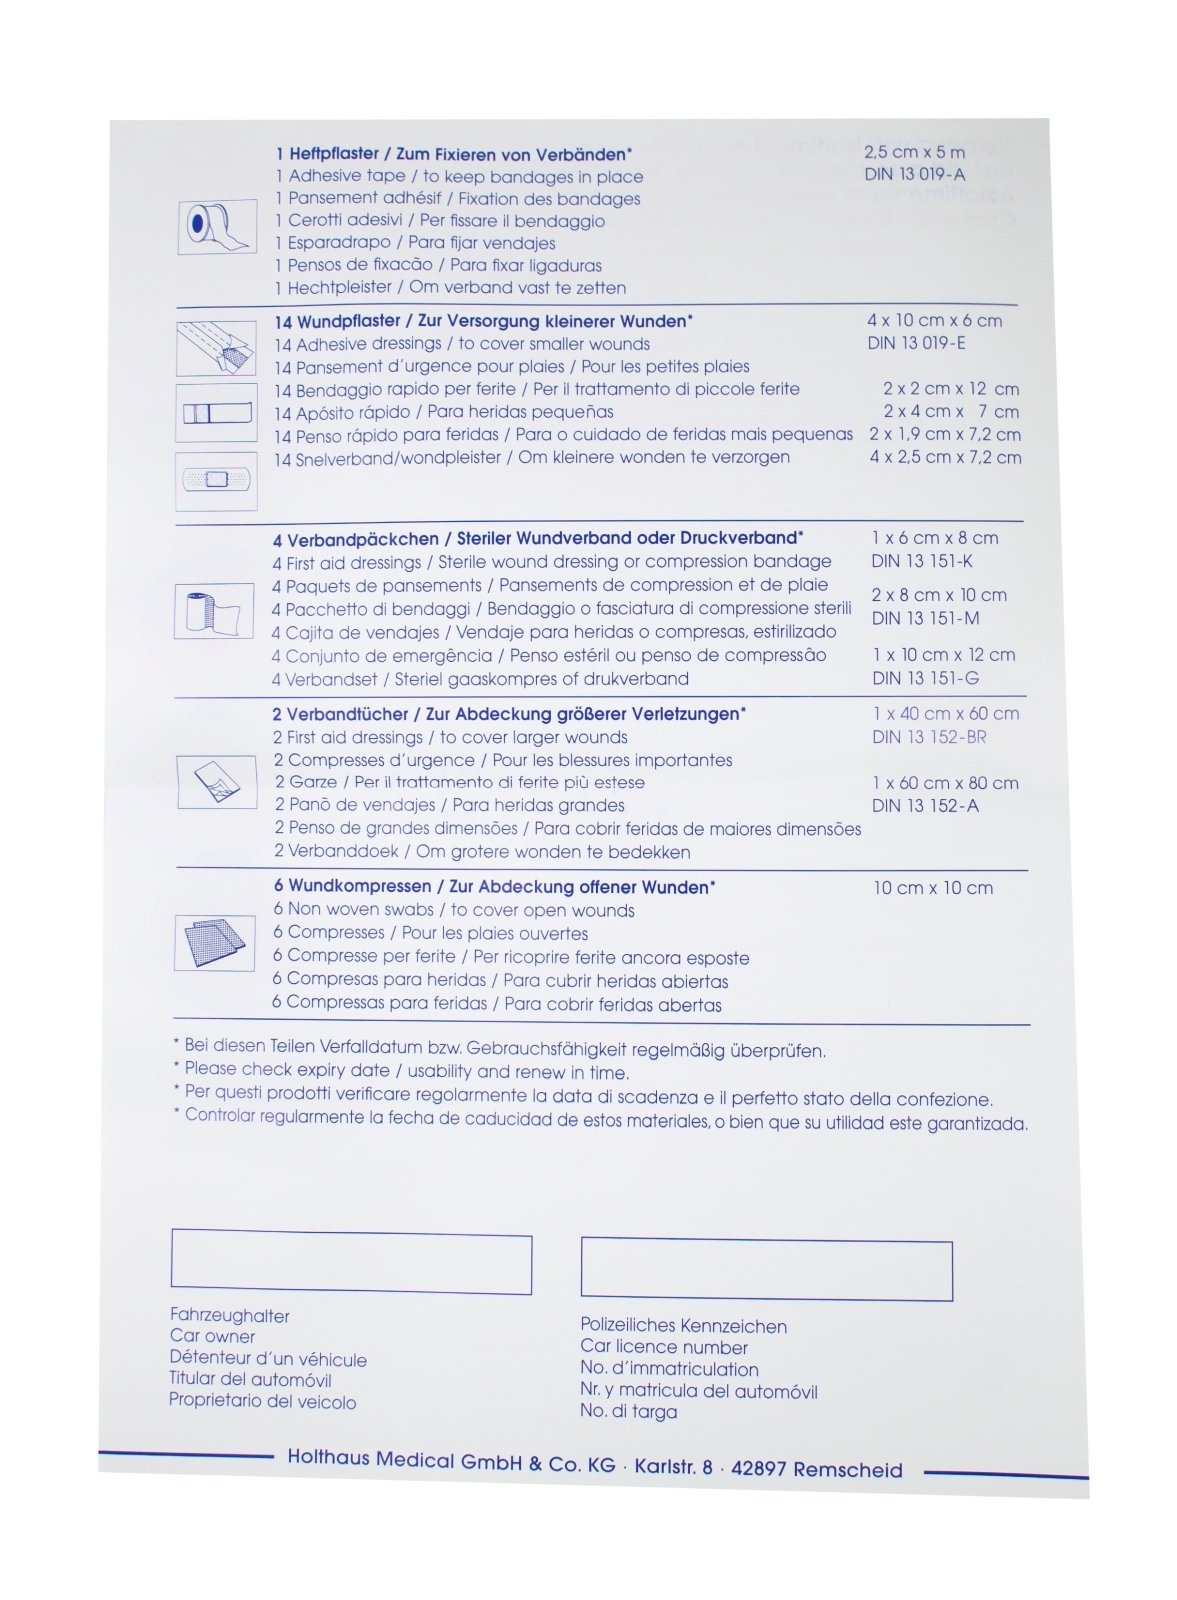 Holthaus Medical Kfz-Verbandtasche Auto-Verbandkasten mit Malteser Anwendungsbroschüre DIN 13164 (Grau)